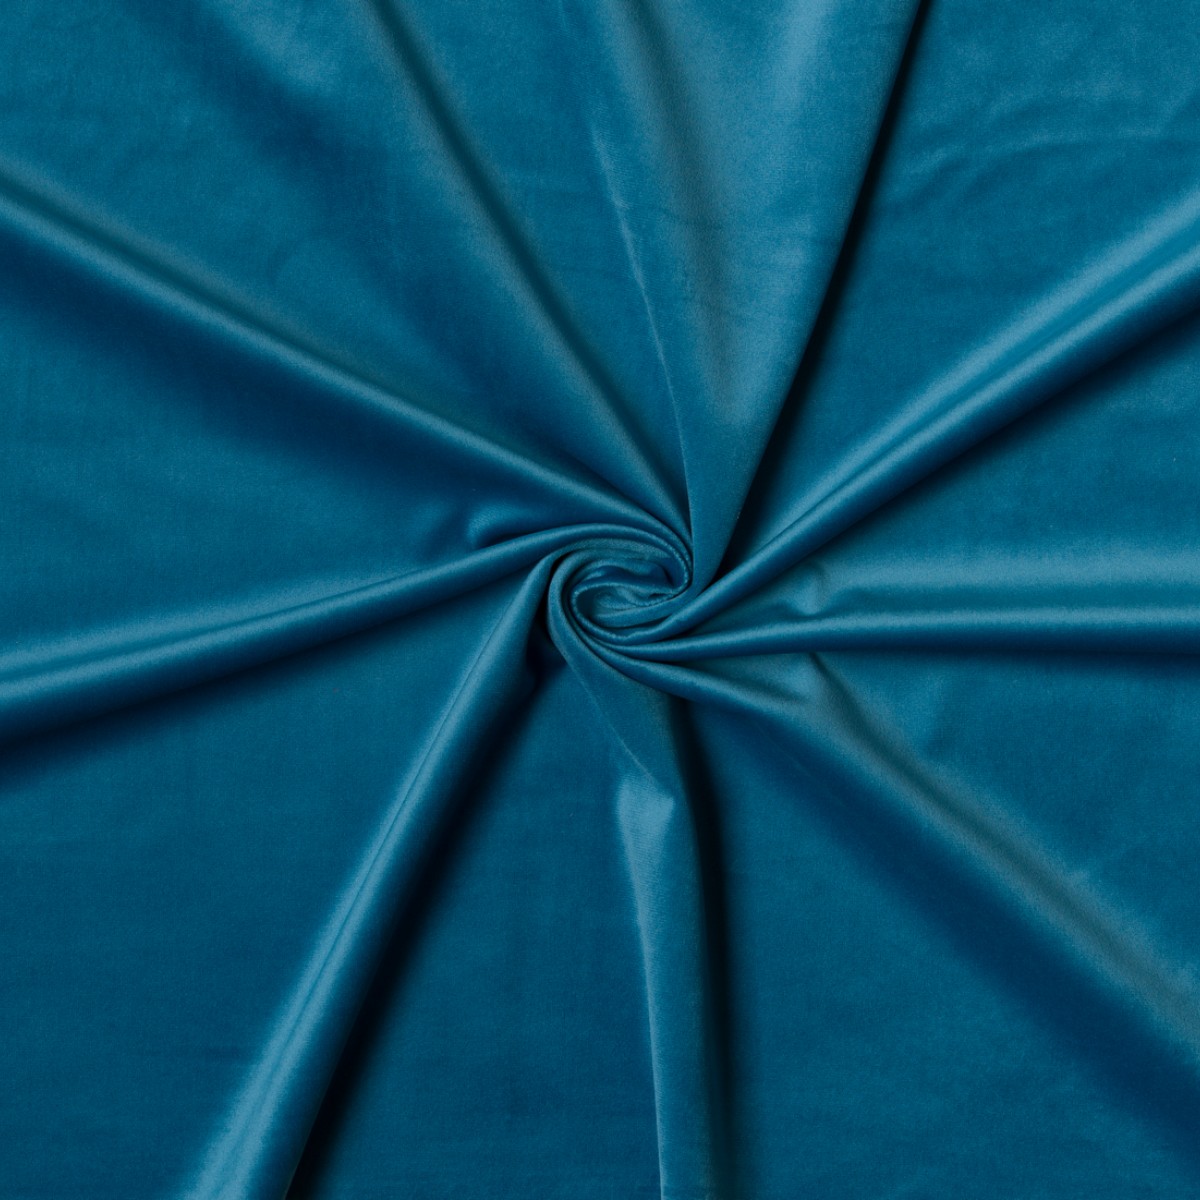 Draperii Mendola fabrics MDF-391-ADELAIDE-V96. Conține culorile: Albastru, Albastru Gențian, Roșu, Roșu-Violet, Albastru, Albastru Deschis, Violet, Violet-Mov, Violet, Violet-Albastru